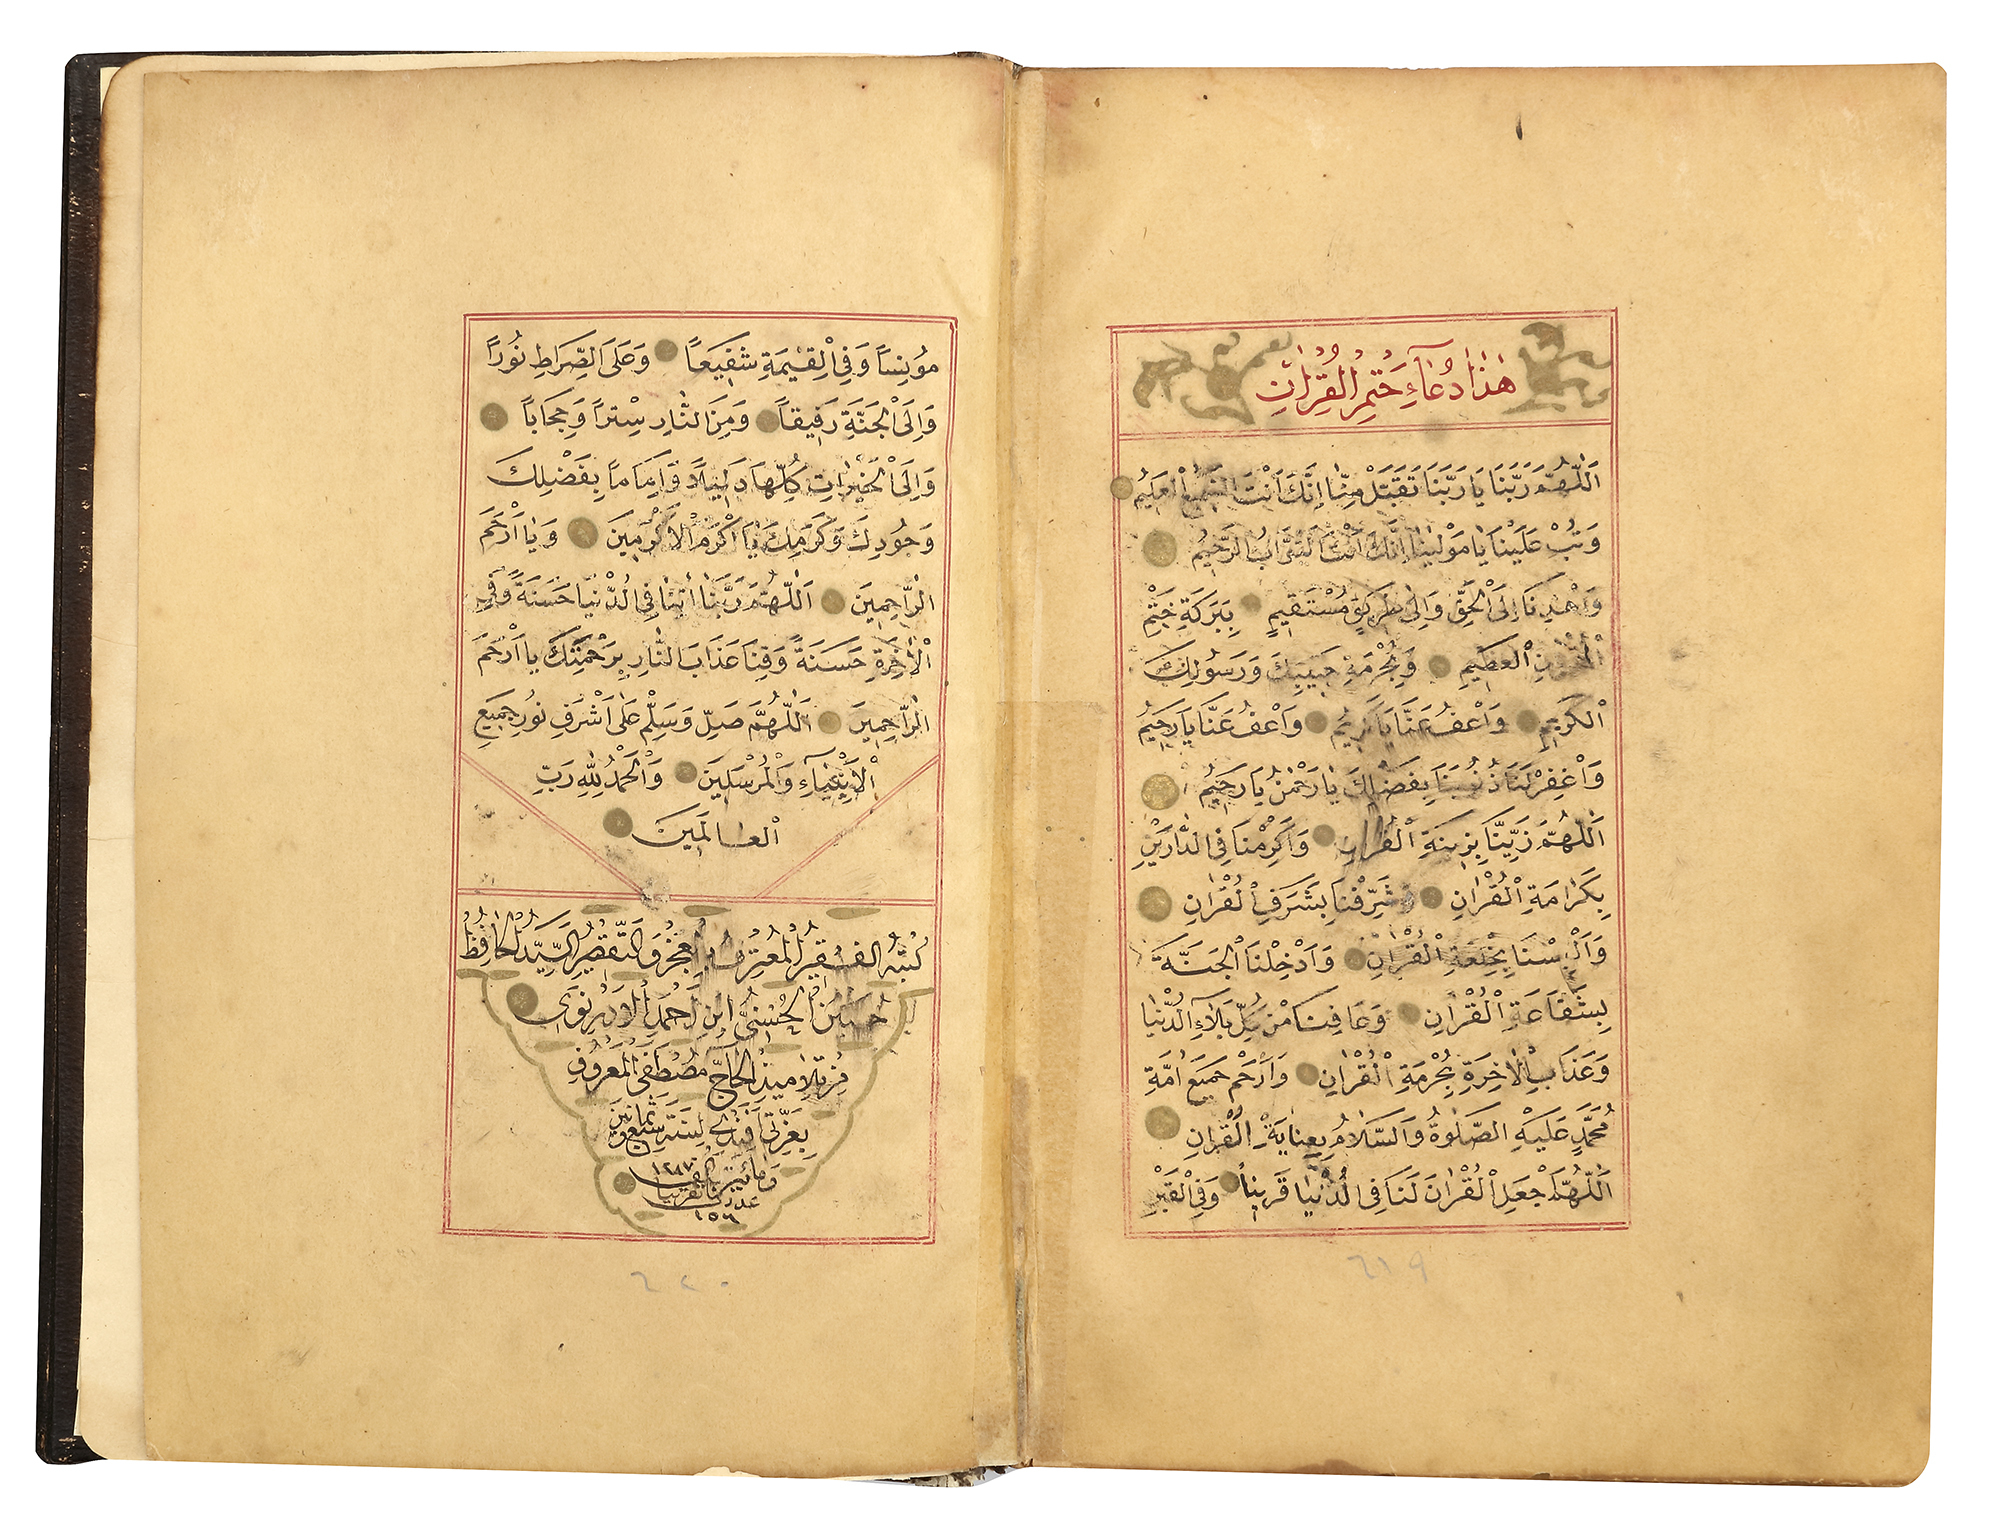 A FINE OTTOMAN QURAN, TURKEY, EDIRNE, WRITTEN BY HUSSEIN AL-HUSNA IBN AHMED AL-ADRUNI, DATED 1287 AH - Image 7 of 8